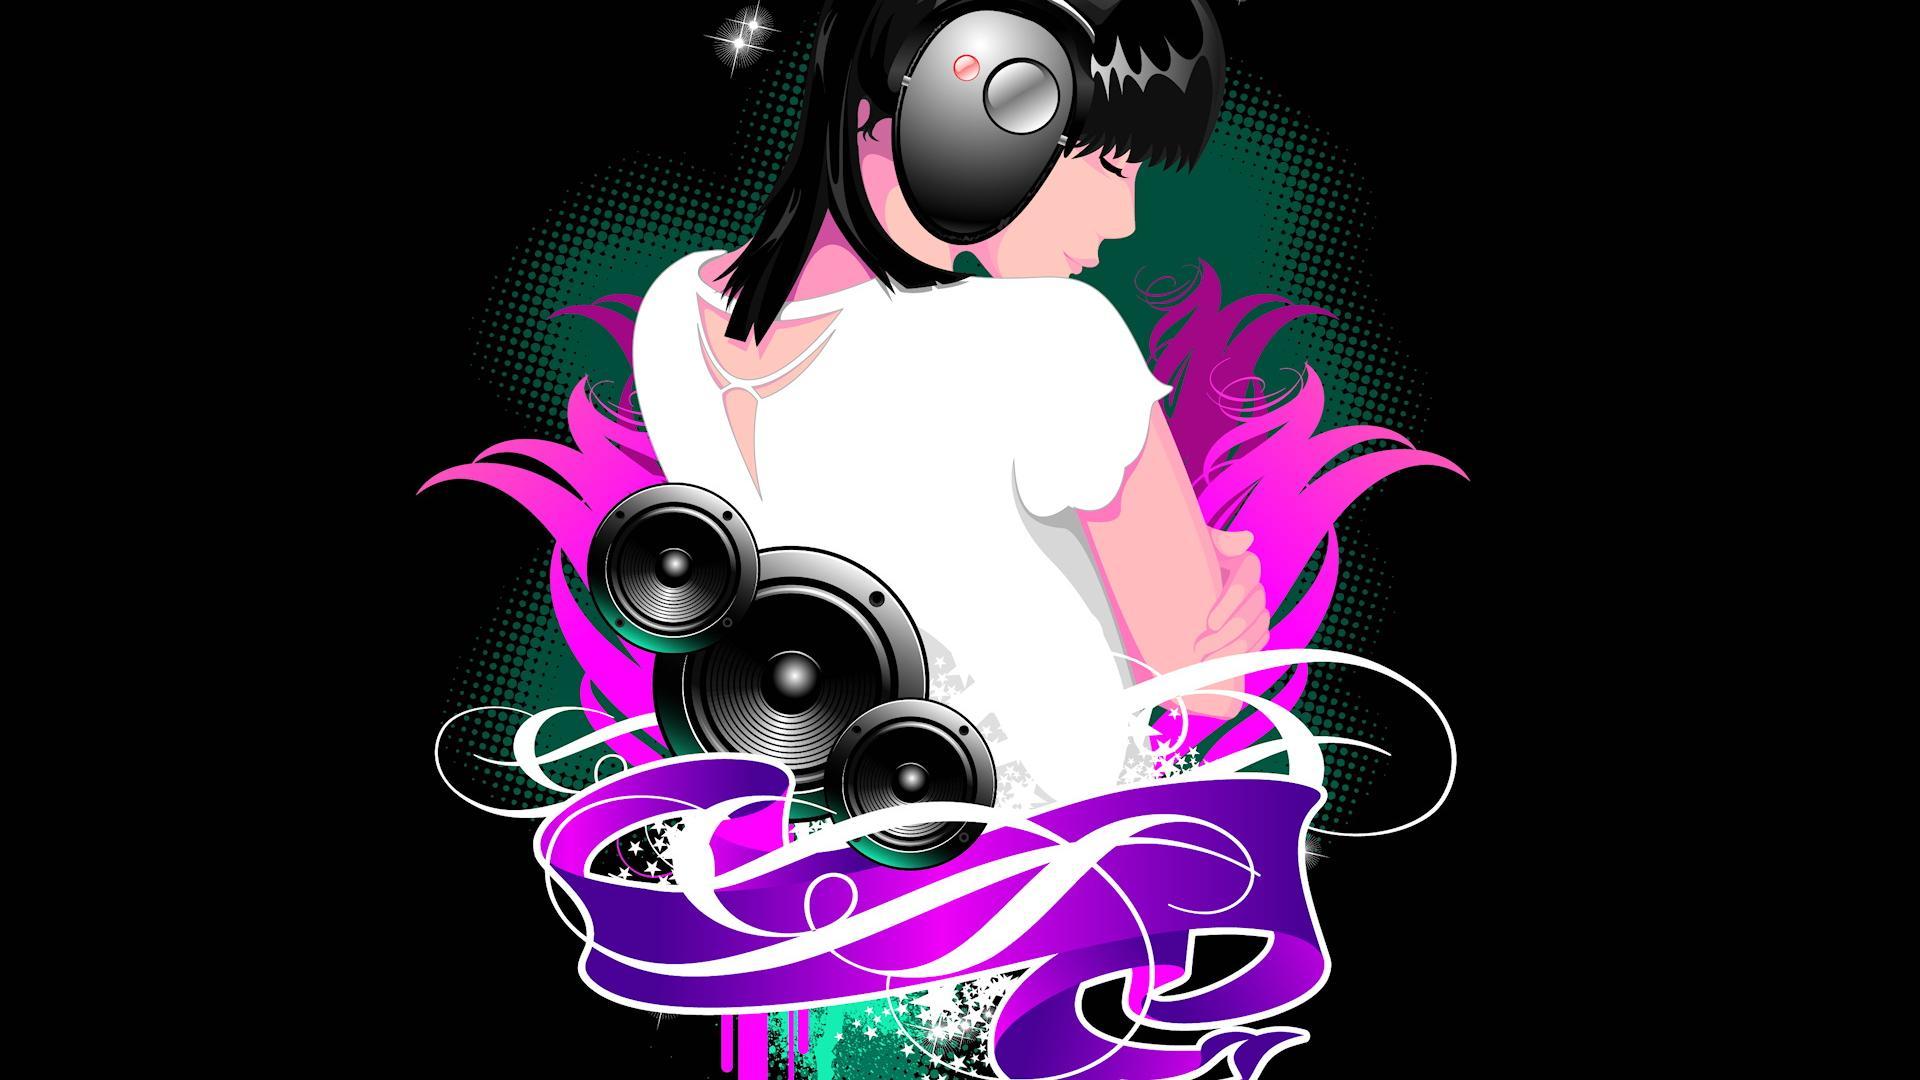 I AM Your DJ Wallpaper. Cool DJ